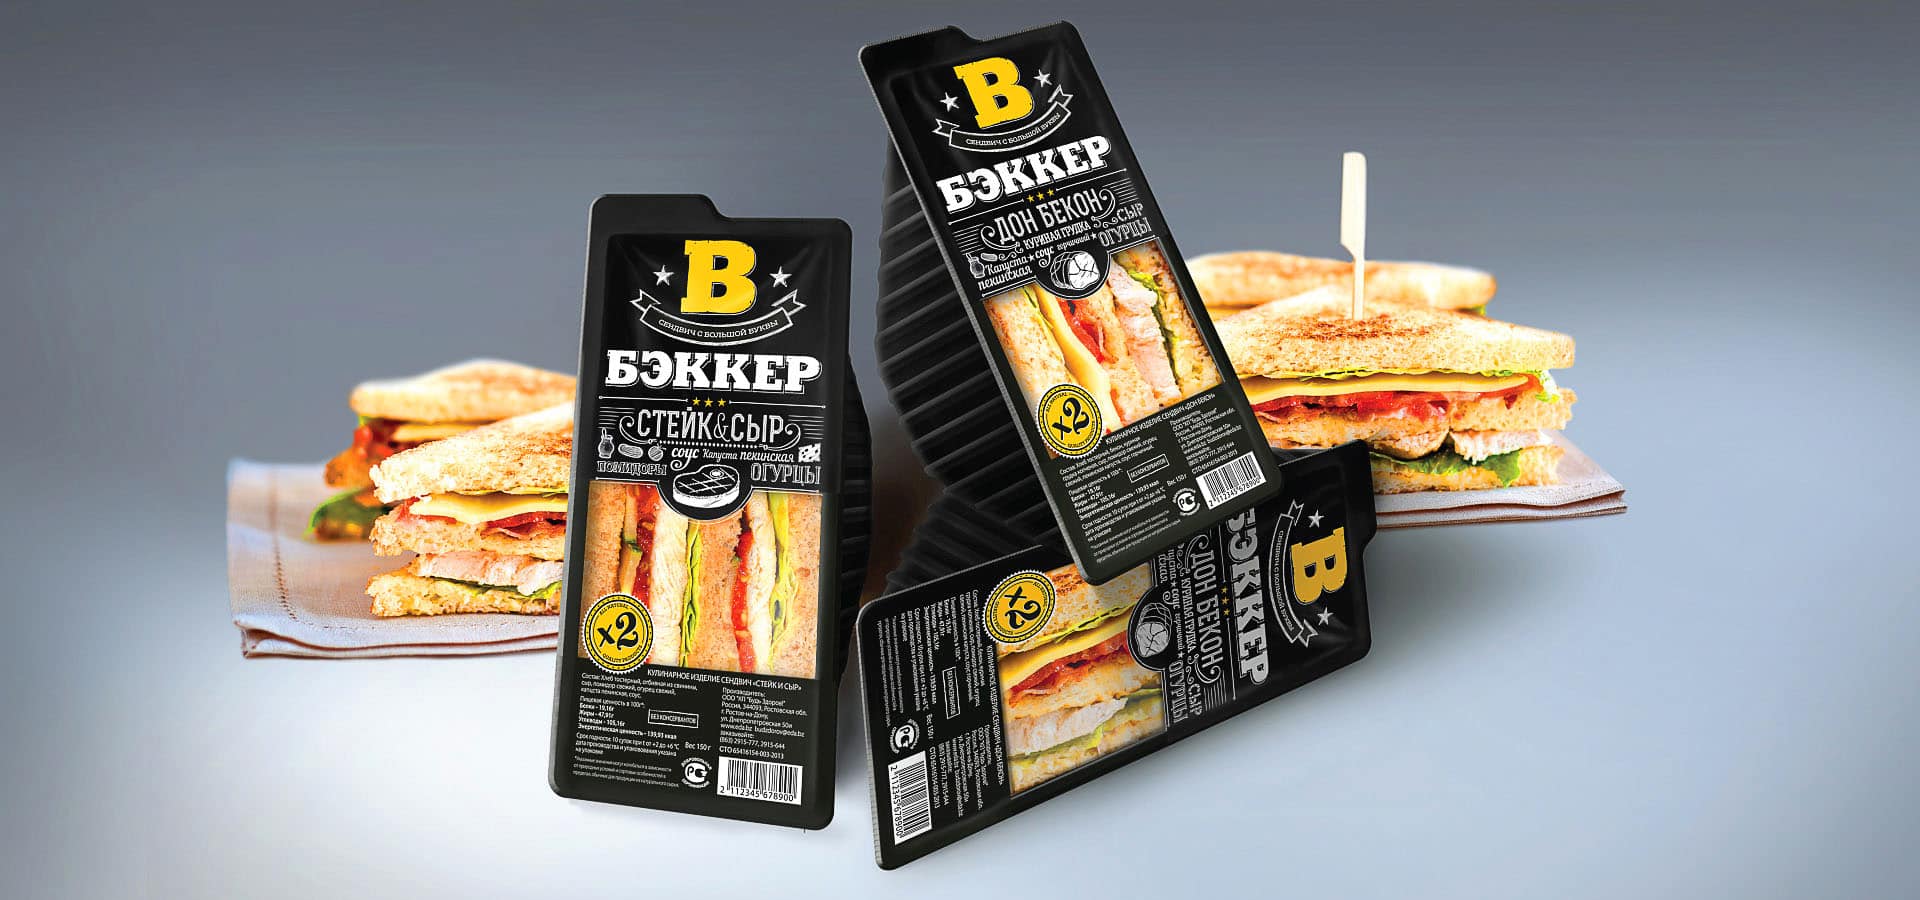 Дизайн упаковки бренда «Бэккер», разработанный дизайн-агентством «Stors», основан на стилистике меловых заметок